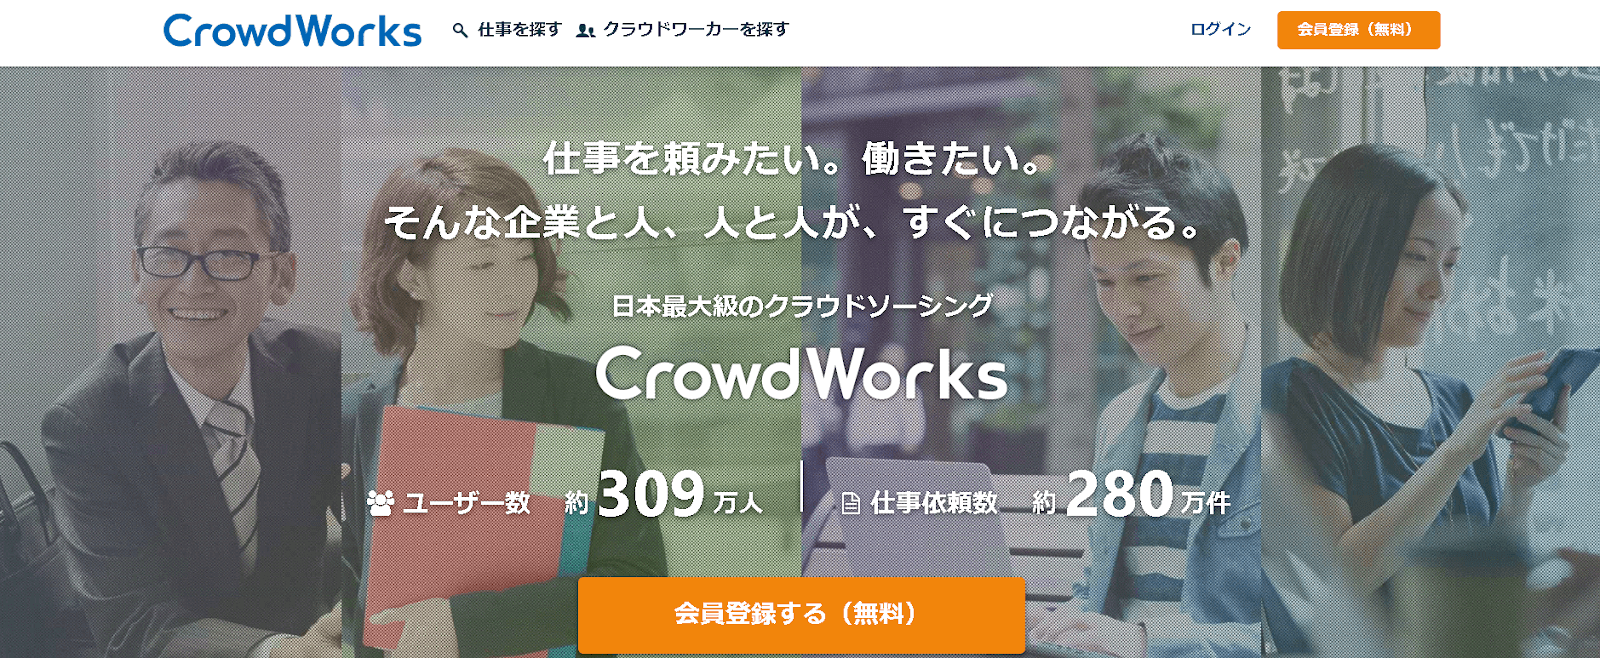 クラウドソーシングは日本最大級の「クラウドワークス」